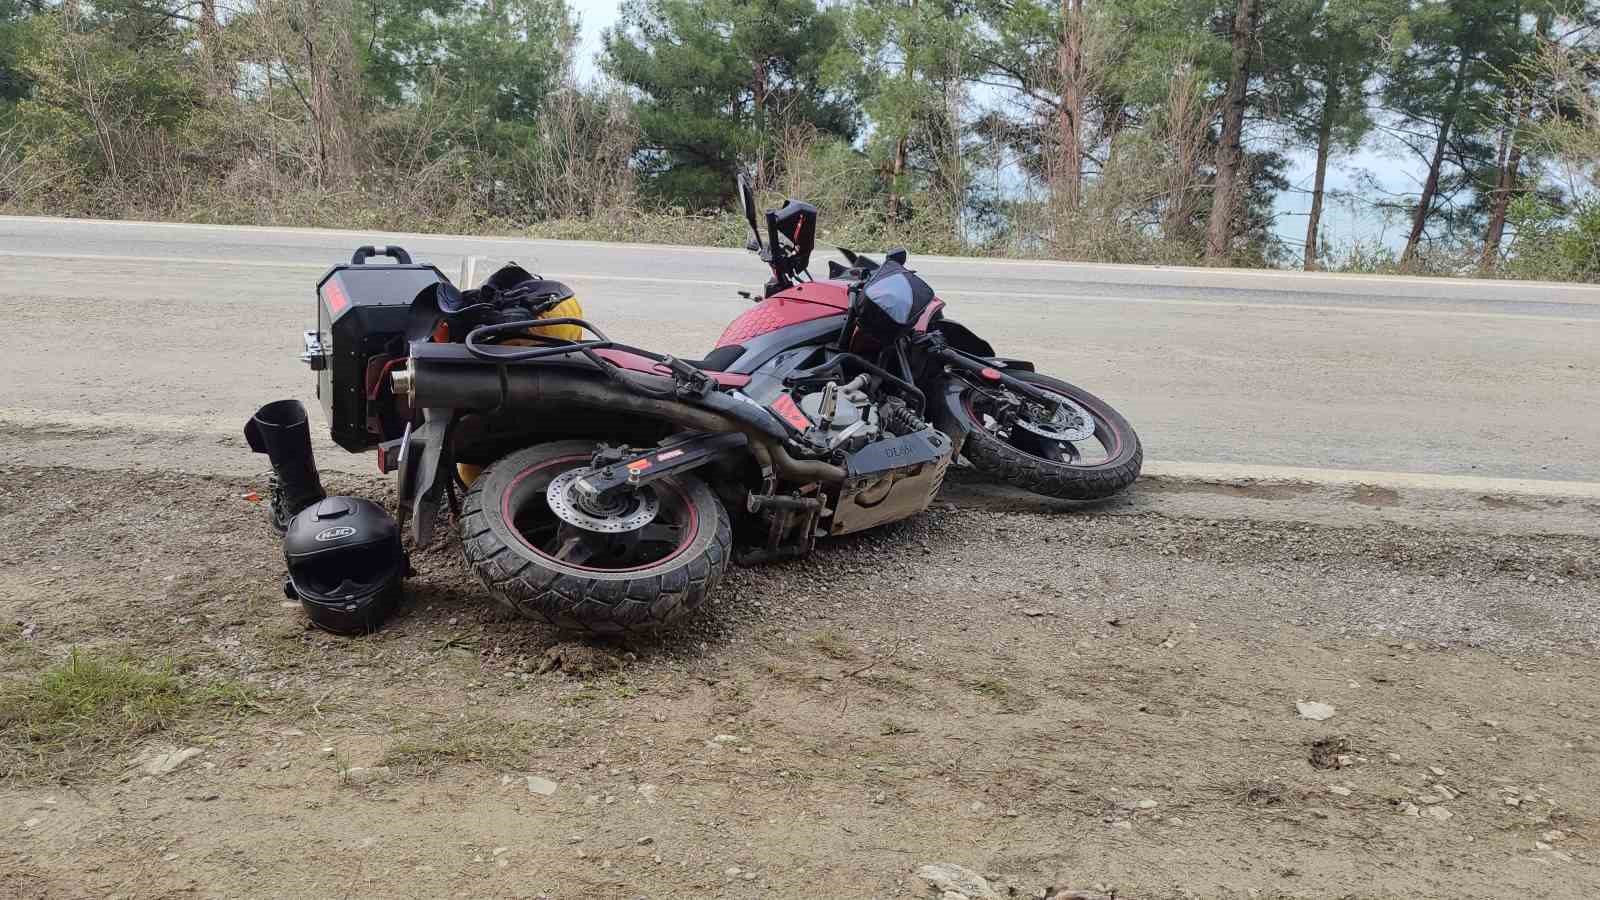 Kastamonu’da motosiklet kazası: Rusya uyruklu sürücü ağır yaralandı
